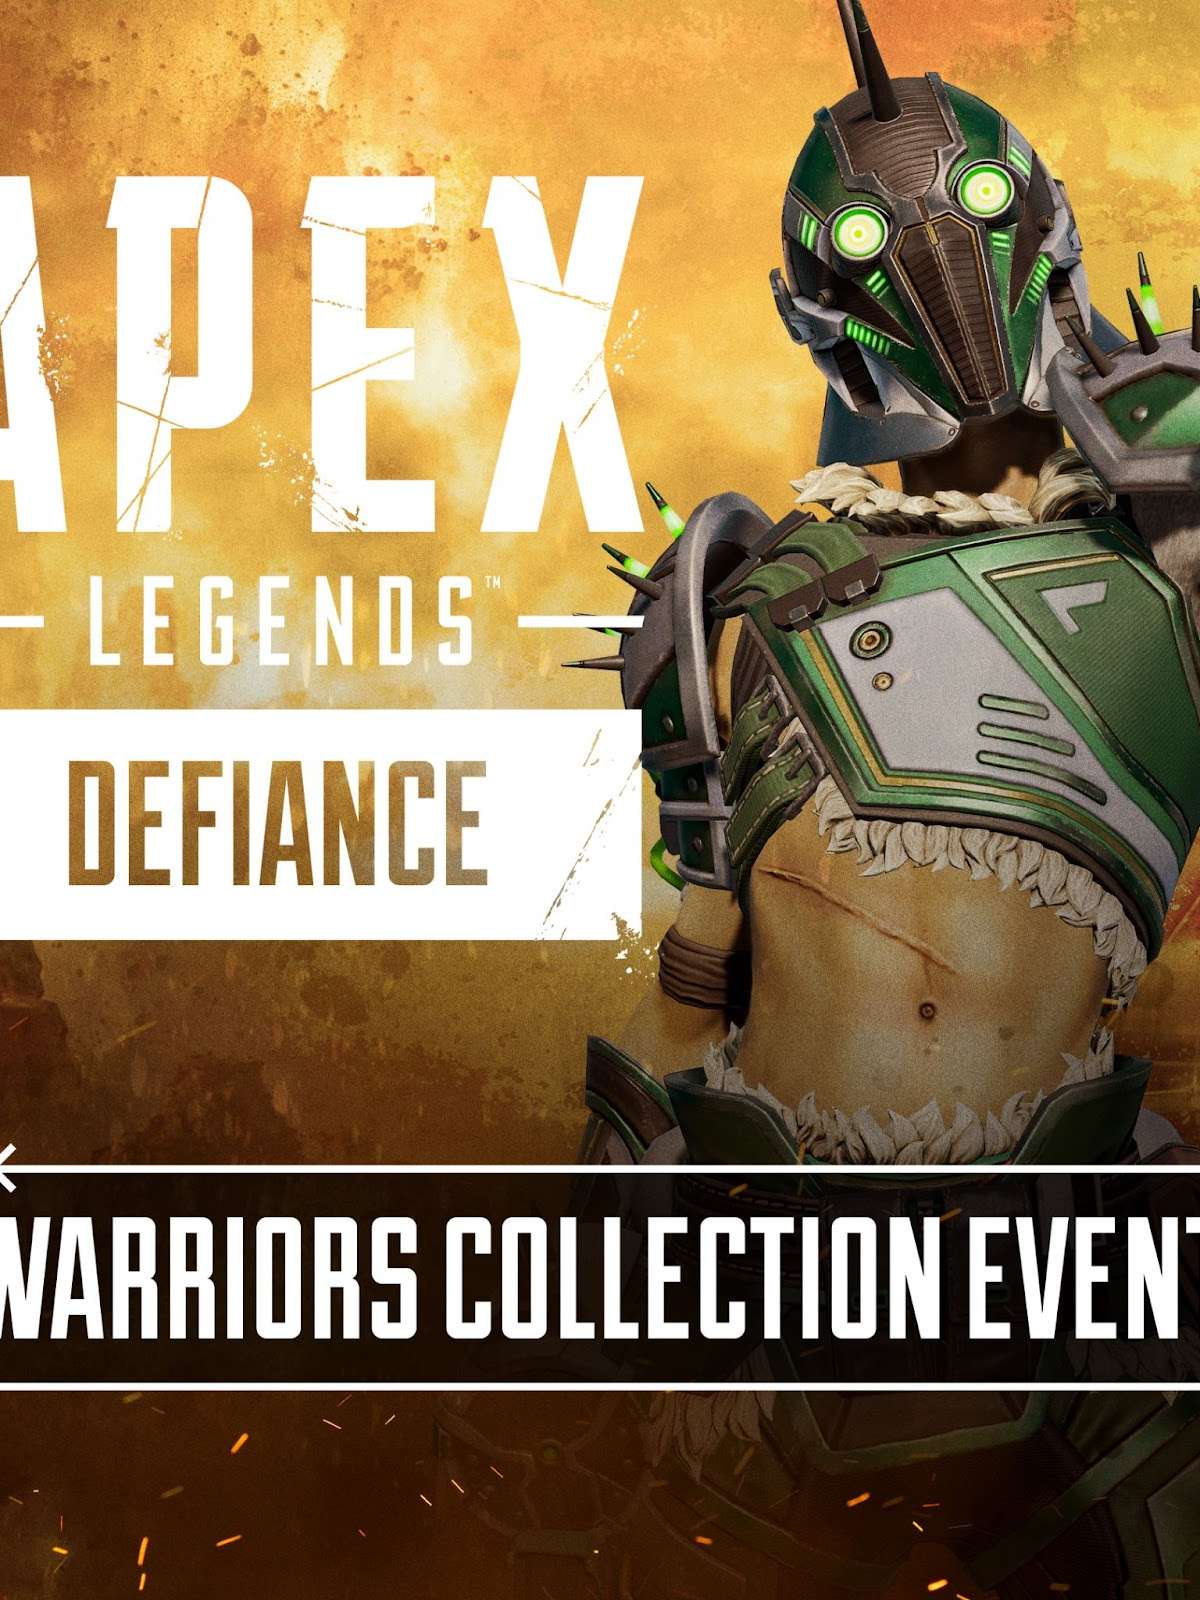 A terceira temporada do Apex Legends Mobile está chegando com